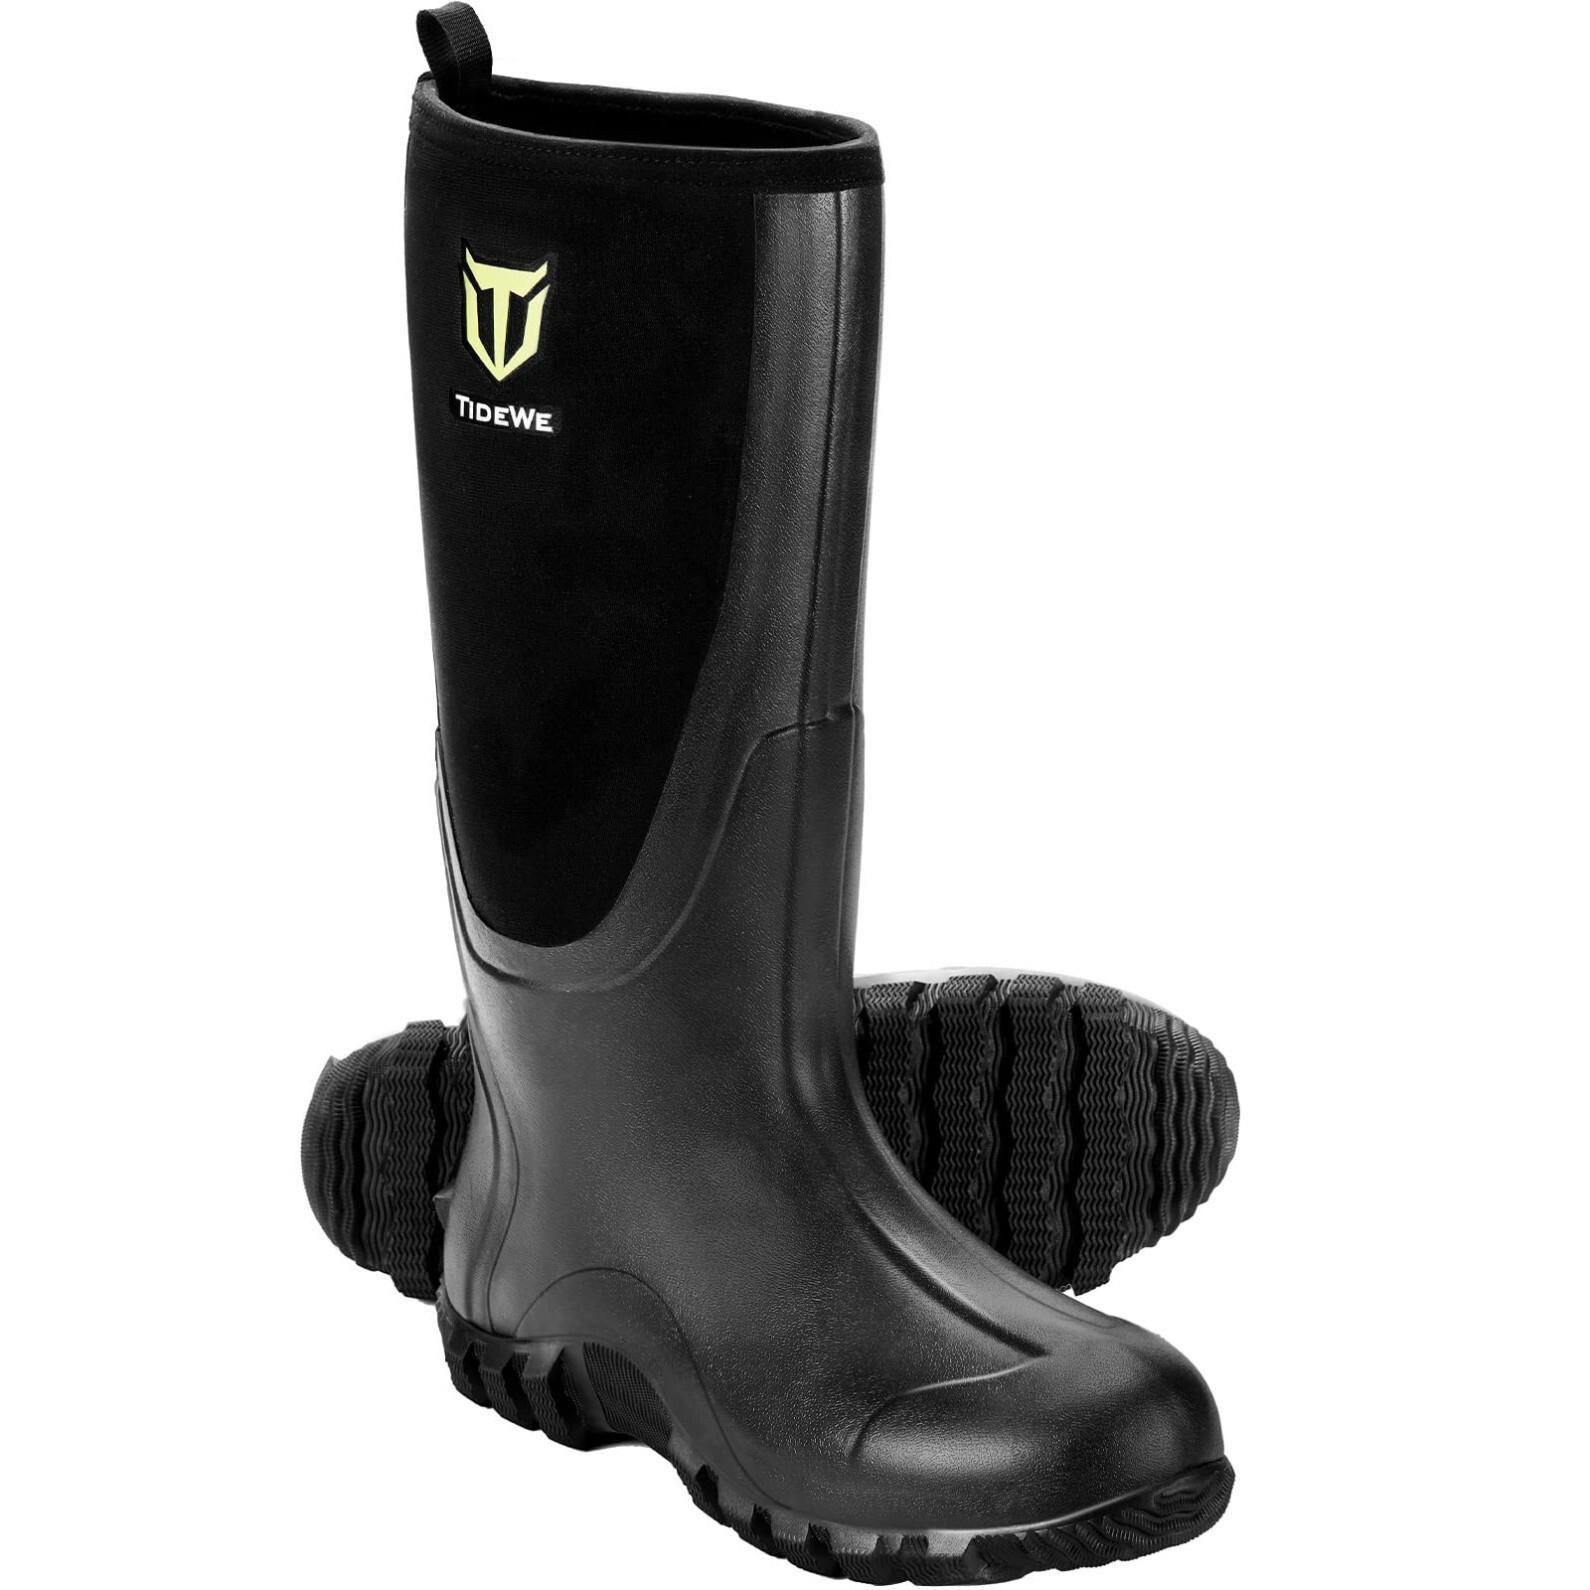 TIDEWE Rubber Boots for Men Multi-Season, Waterpr